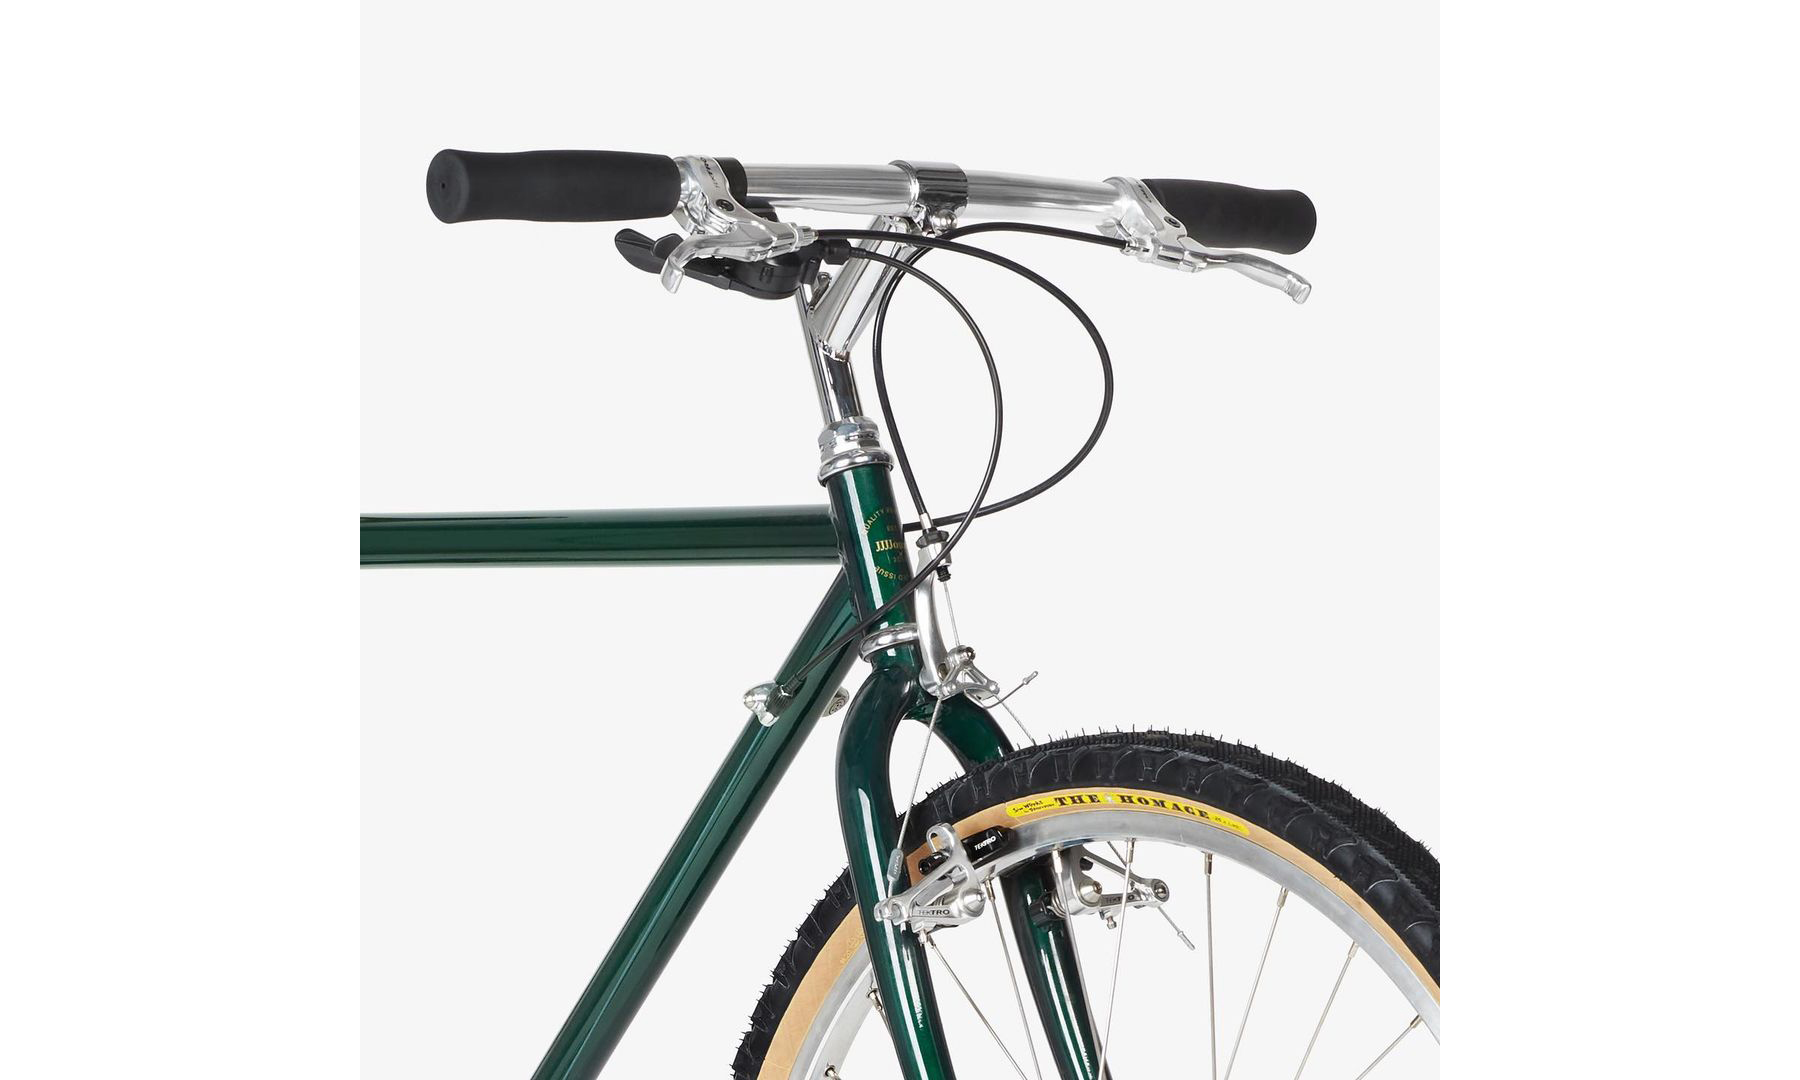 JJJJound 自行车将于下周开售